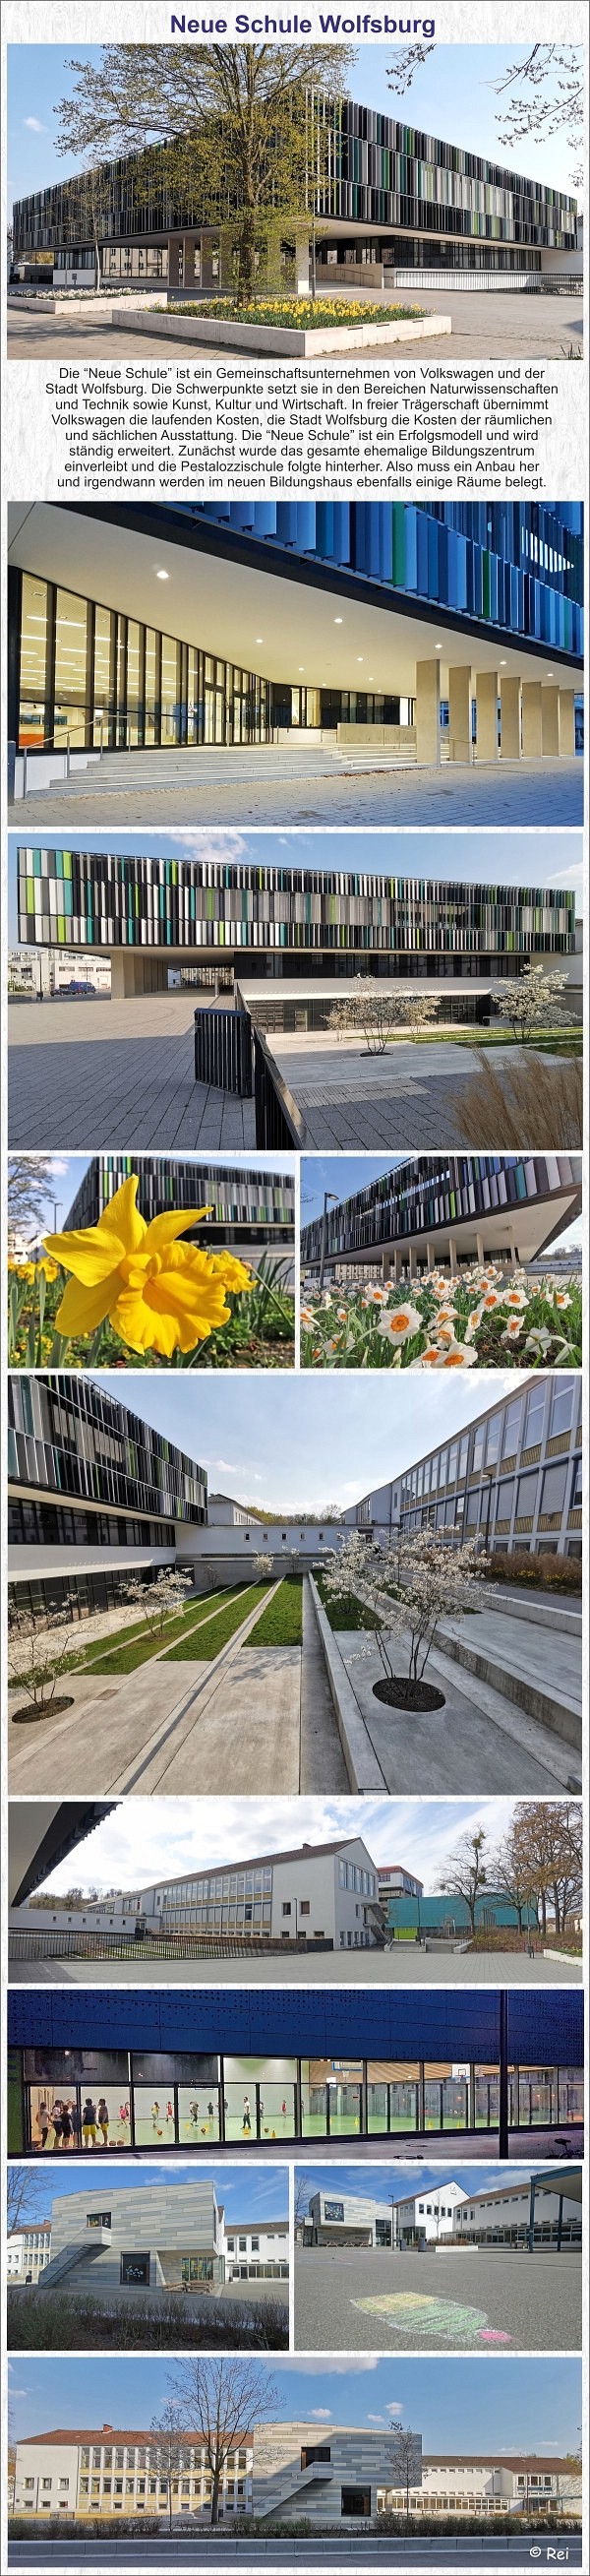 Neue Schule in Wolfsburg